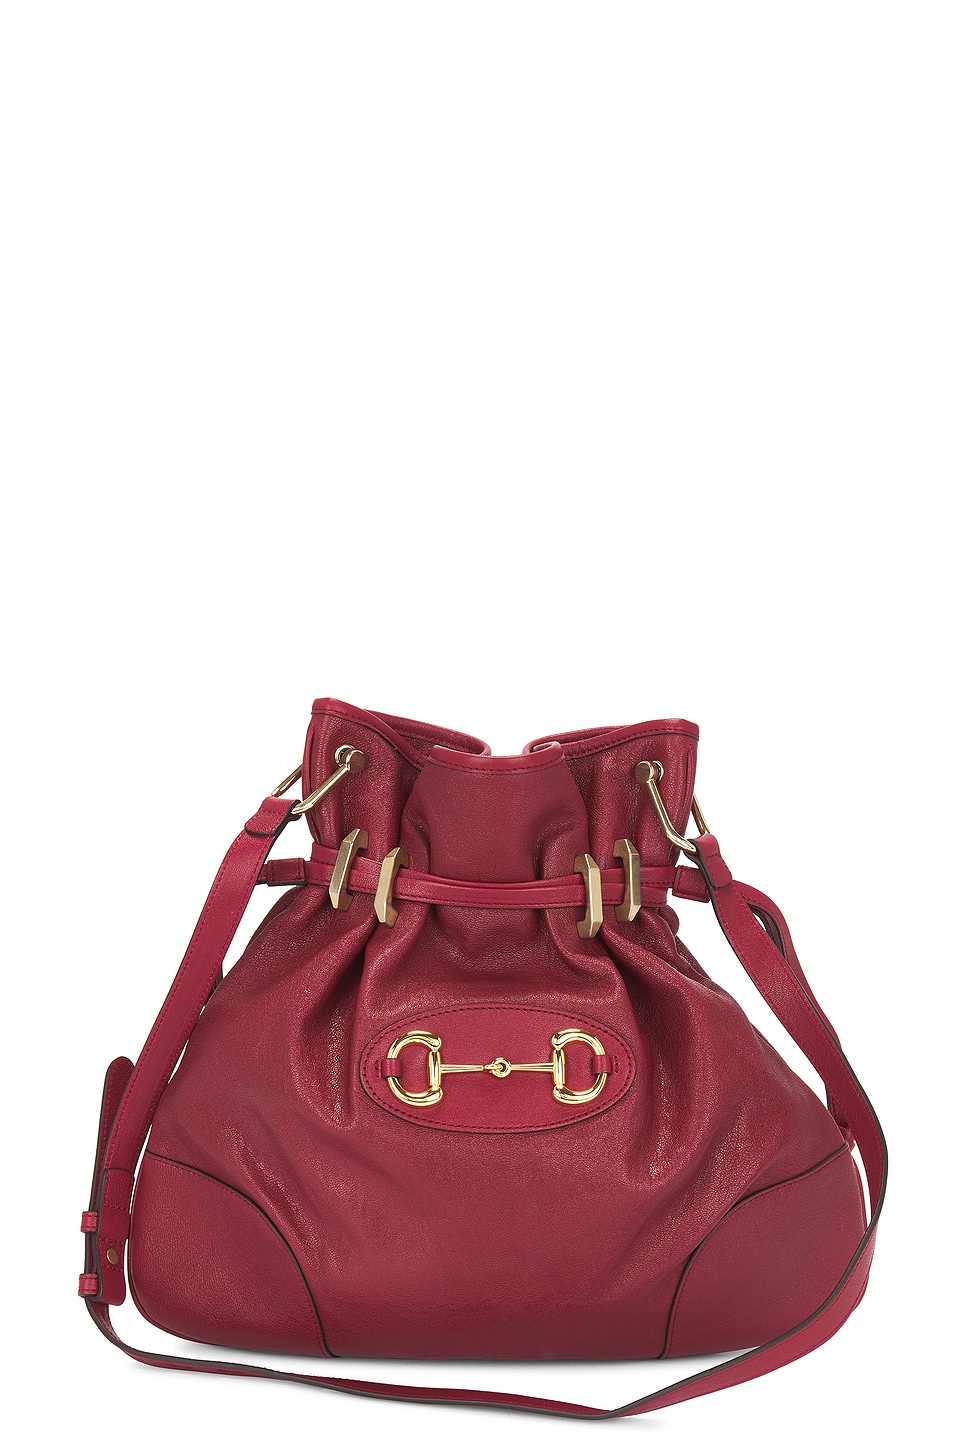 Gucci Horsebit Leather Shoulder Bag In Red